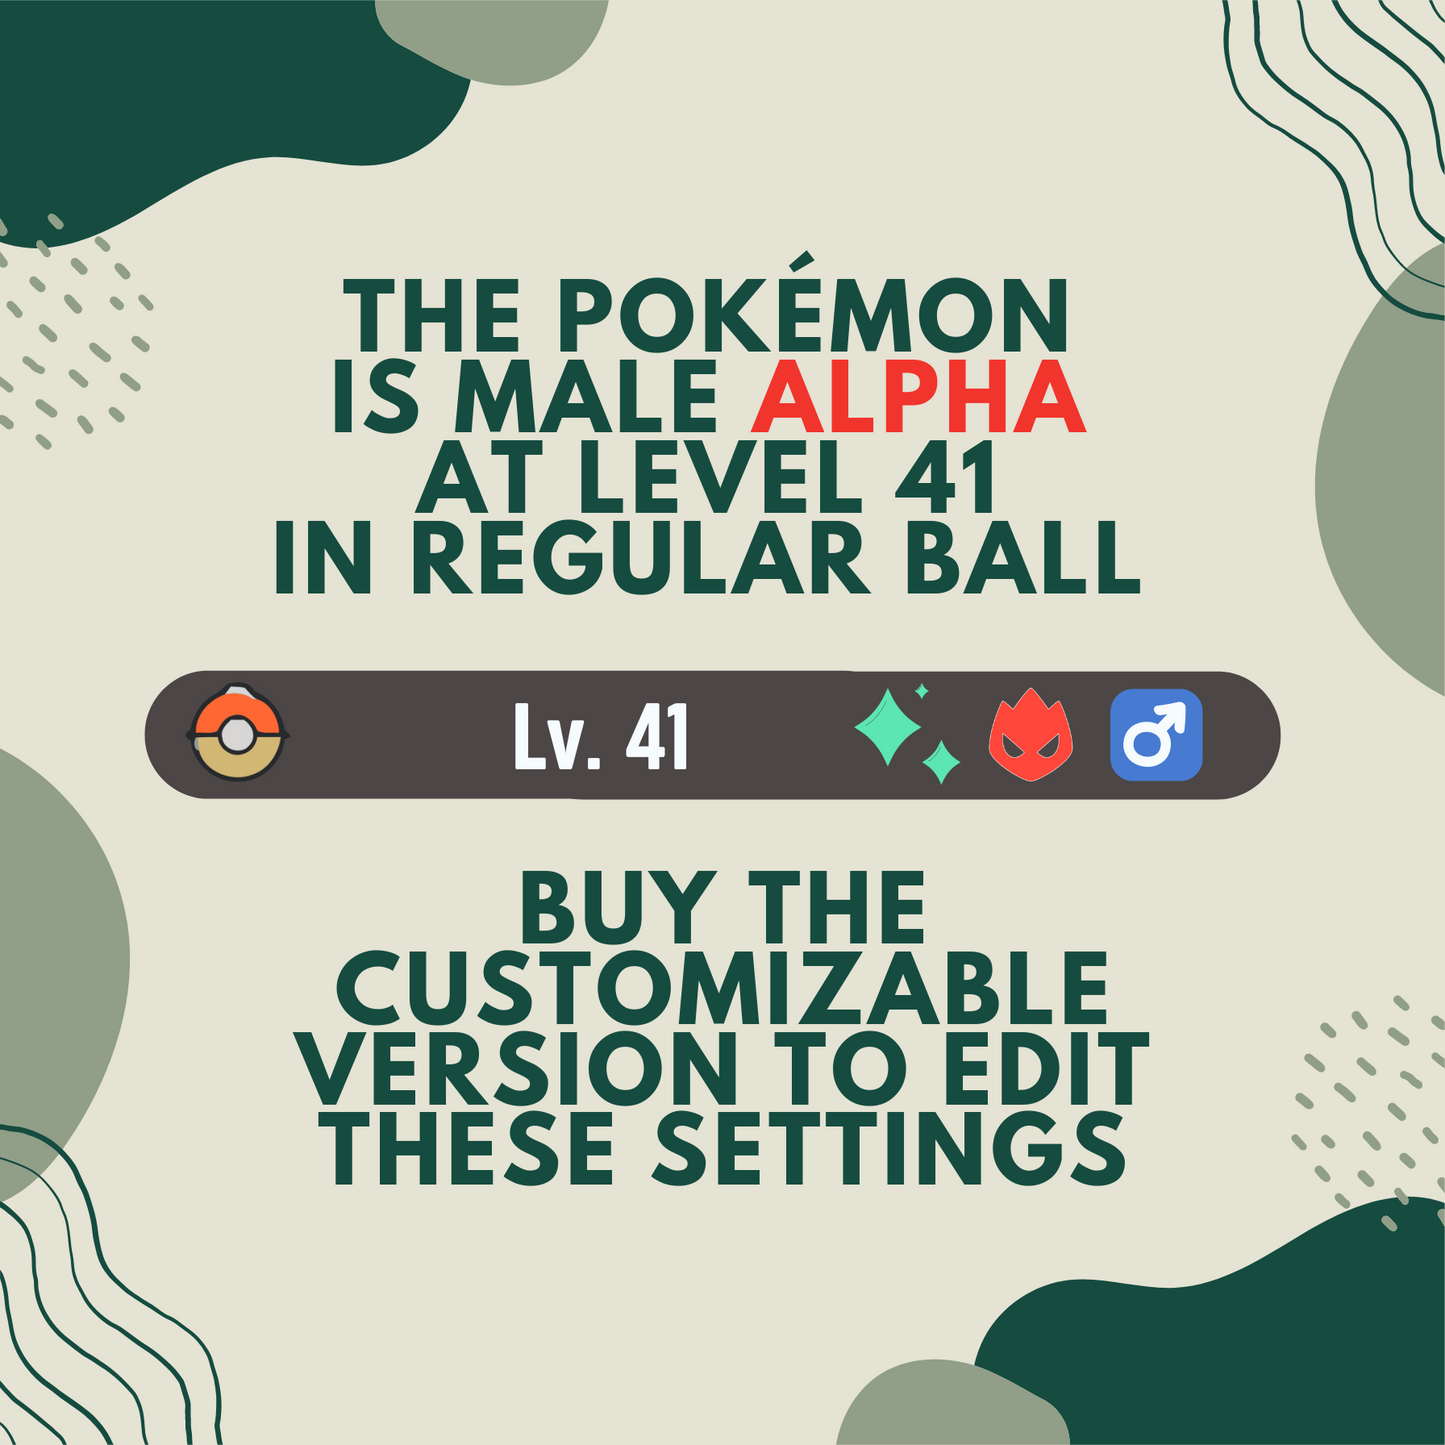 Zorua Shiny ✨ Legends Pokémon Arceus 6 IV Max Effort Custom Leggende Alpha by Shiny Living Dex | Shiny Living Dex